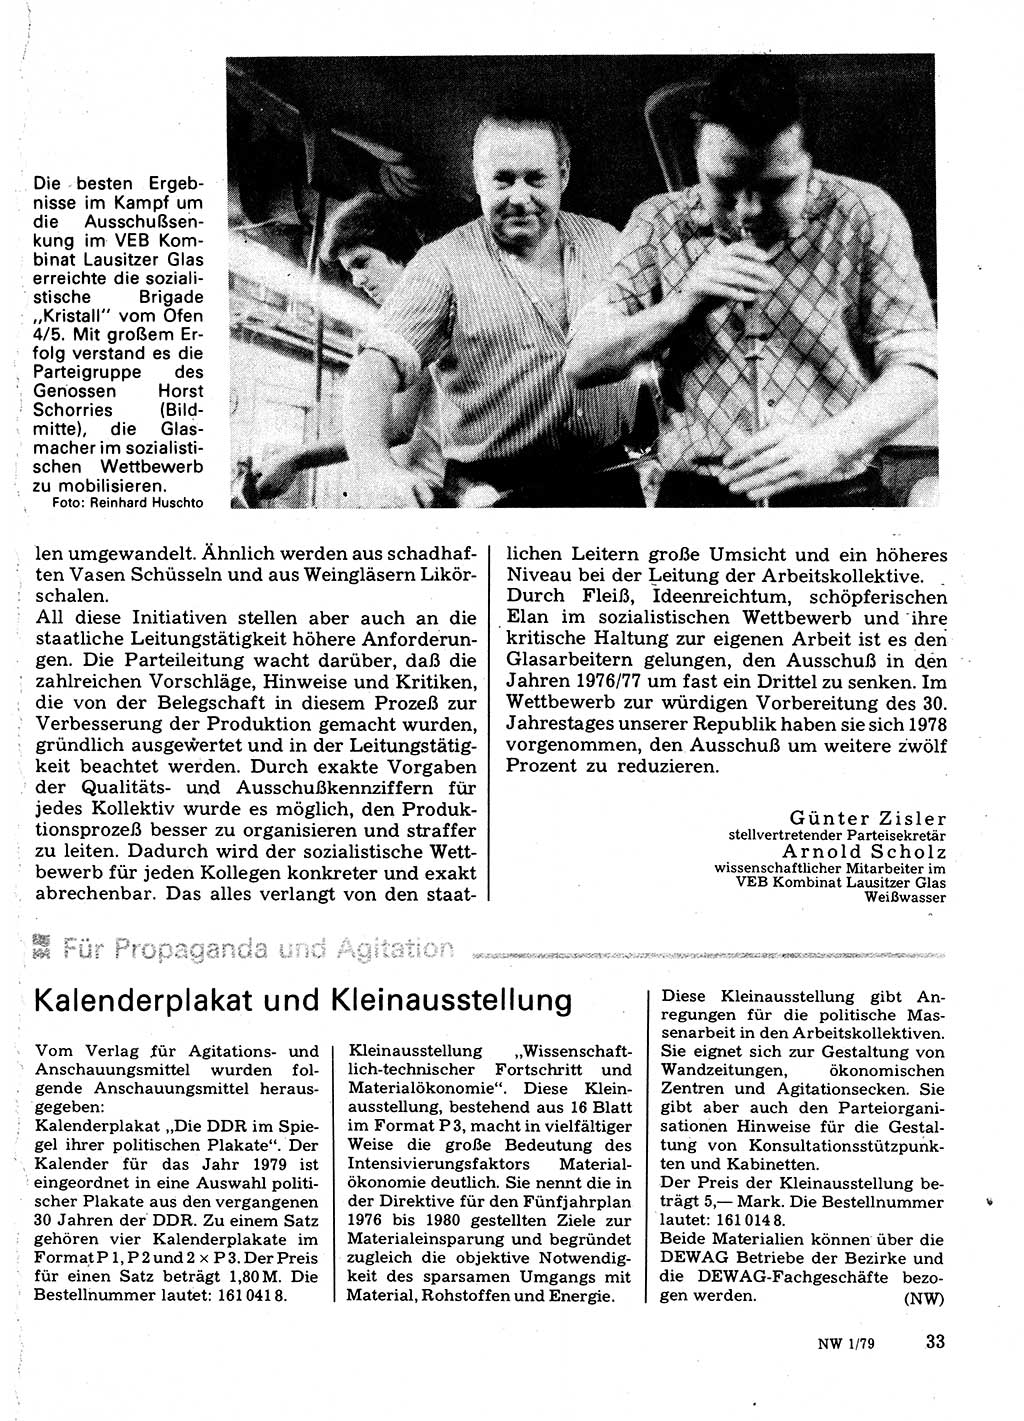 Neuer Weg (NW), Organ des Zentralkomitees (ZK) der SED (Sozialistische Einheitspartei Deutschlands) für Fragen des Parteilebens, 34. Jahrgang [Deutsche Demokratische Republik (DDR)] 1979, Seite 33 (NW ZK SED DDR 1979, S. 33)